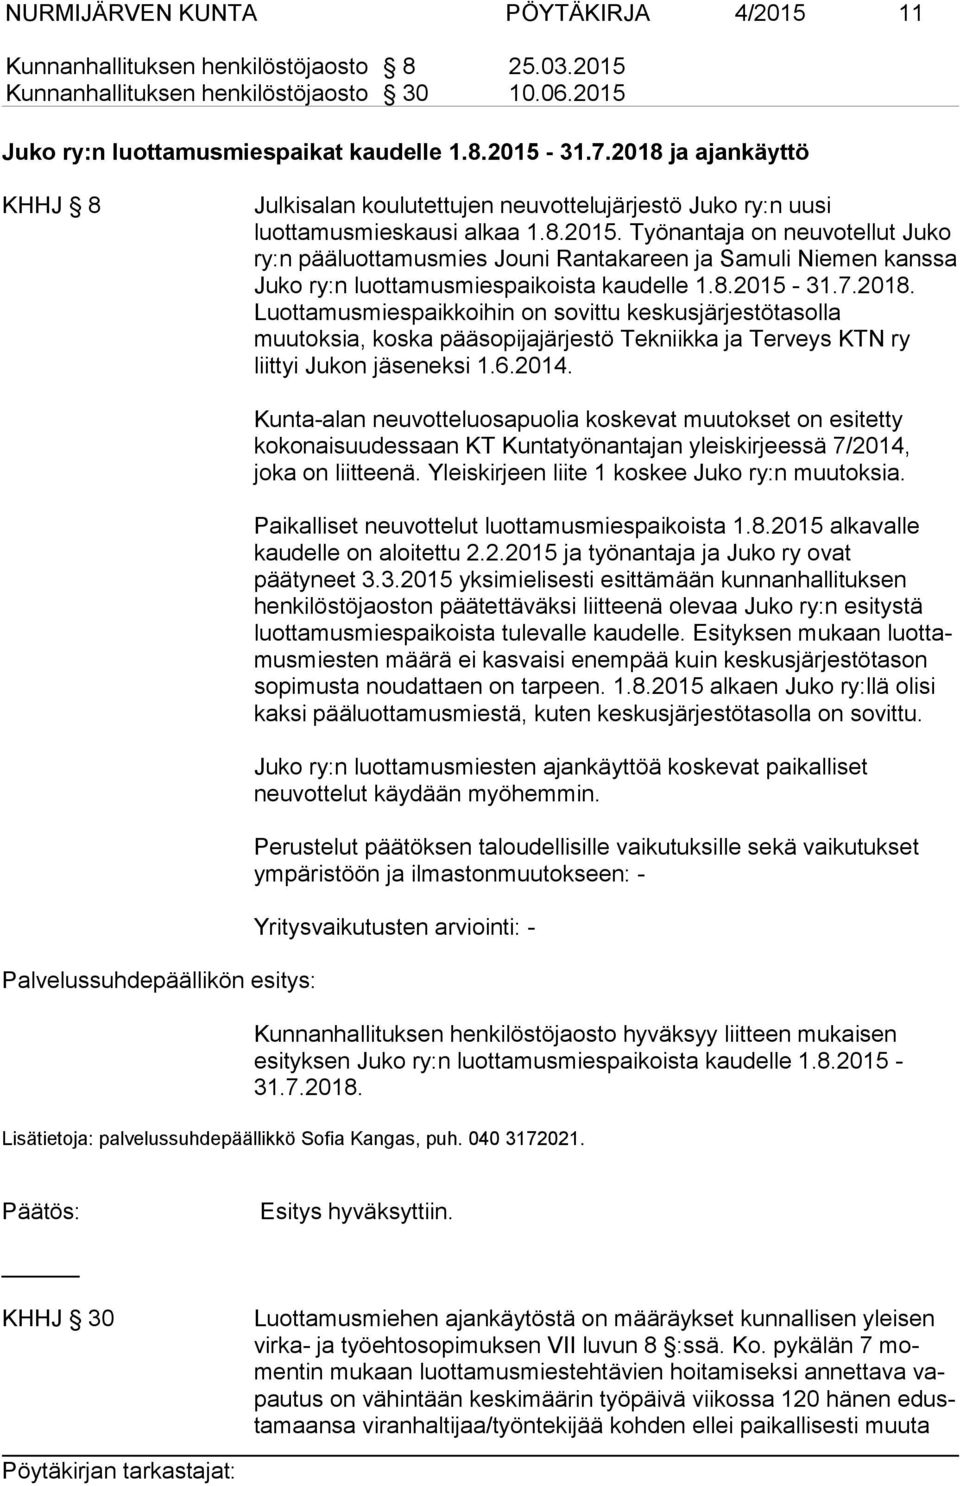 Työnantaja on neu vo tel lut Juko ry:n pääluottamusmies Jouni Rantakareen ja Samuli Nie men kanssa Juko ry:n luottamusmiespaikoista kaudelle 1.8.2015-31.7.2018.